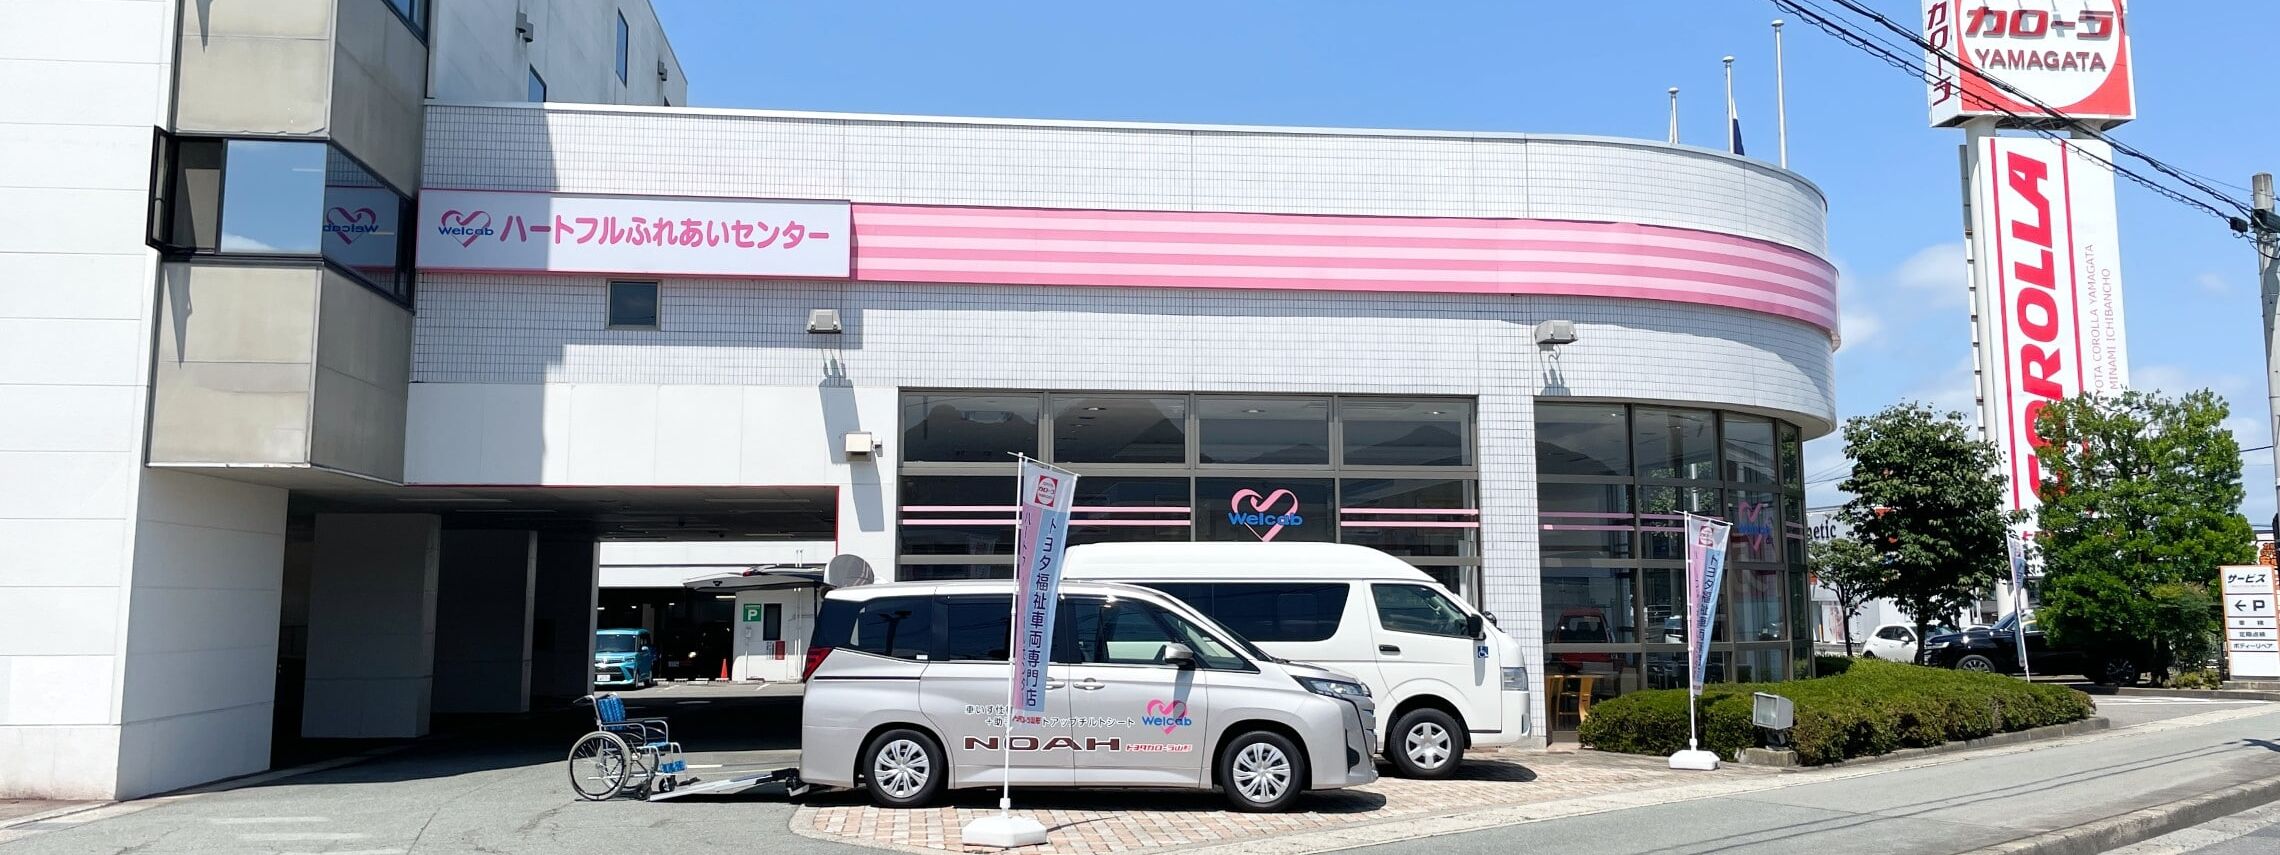 トヨタカローラ山形の福祉車両専門店「ハートフルふれあいセンター」のご紹介ページです。